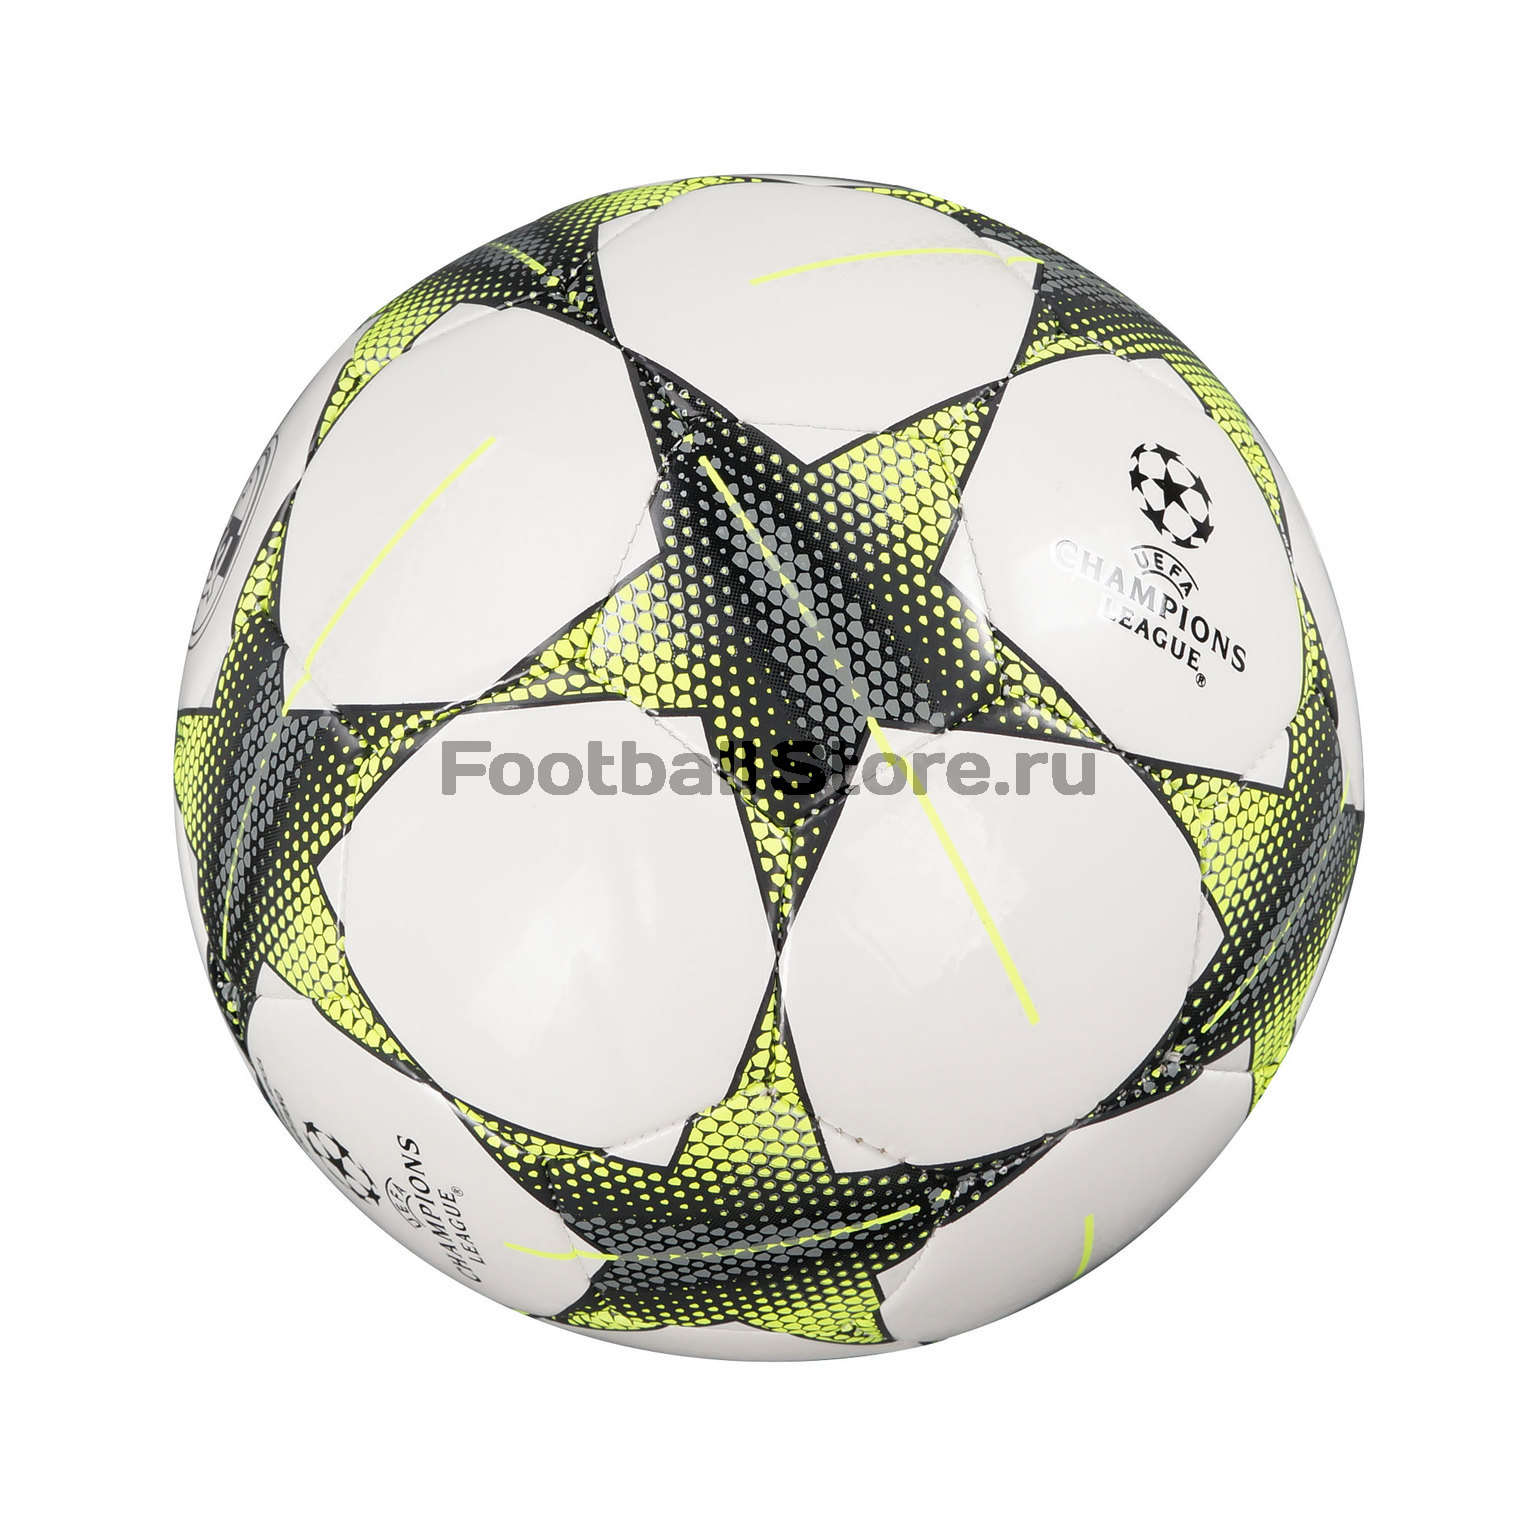 Perfecto Química Gracioso Мяч Adidas Real Madrid Final S90220 – купить в интернет магазине  footballstore, цена, фото